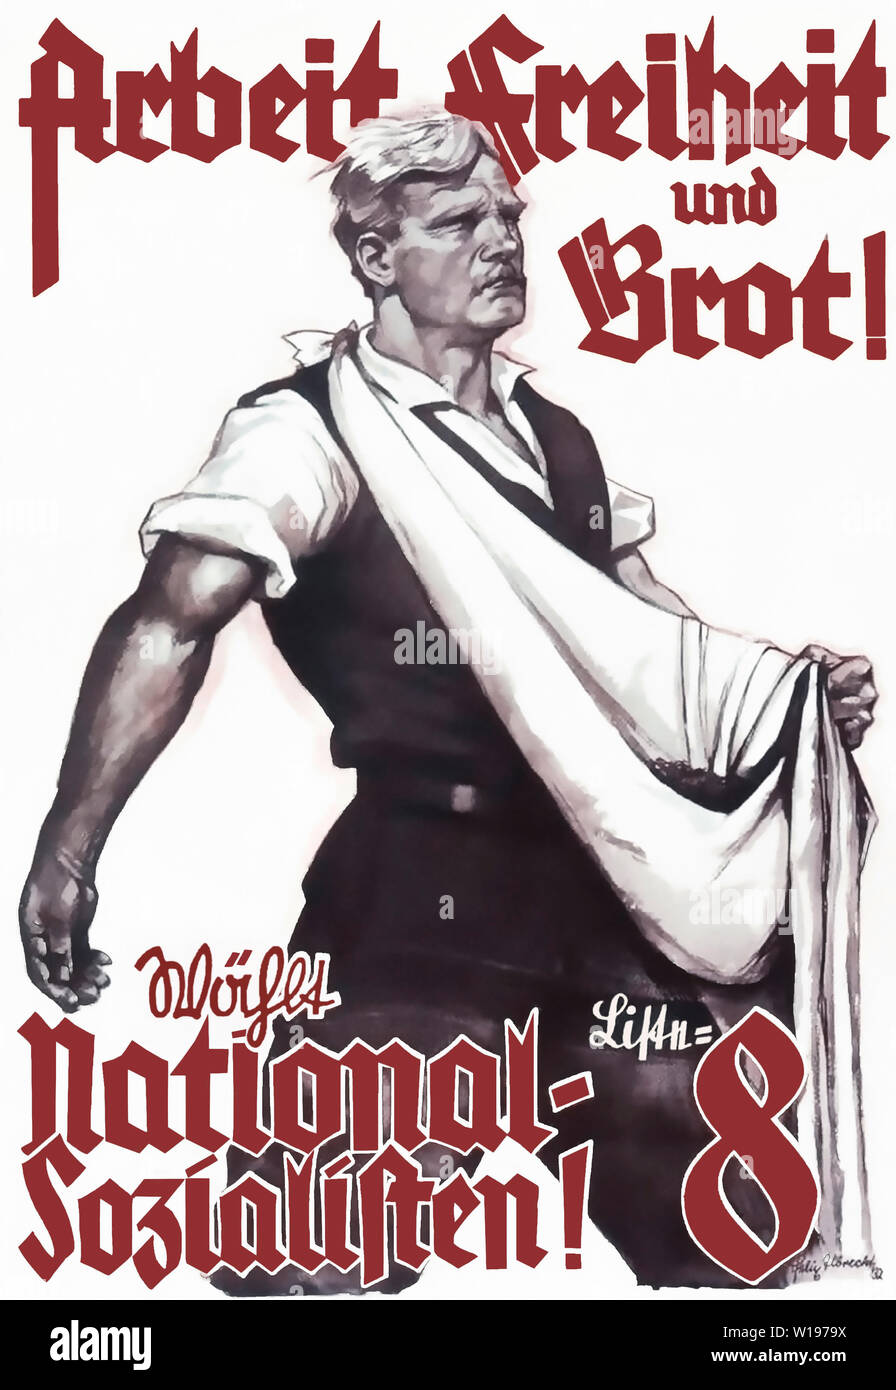 Arbeit, Freiheit und Brot! Wählt Liste 8 National-Sozialisten! Stock Photo